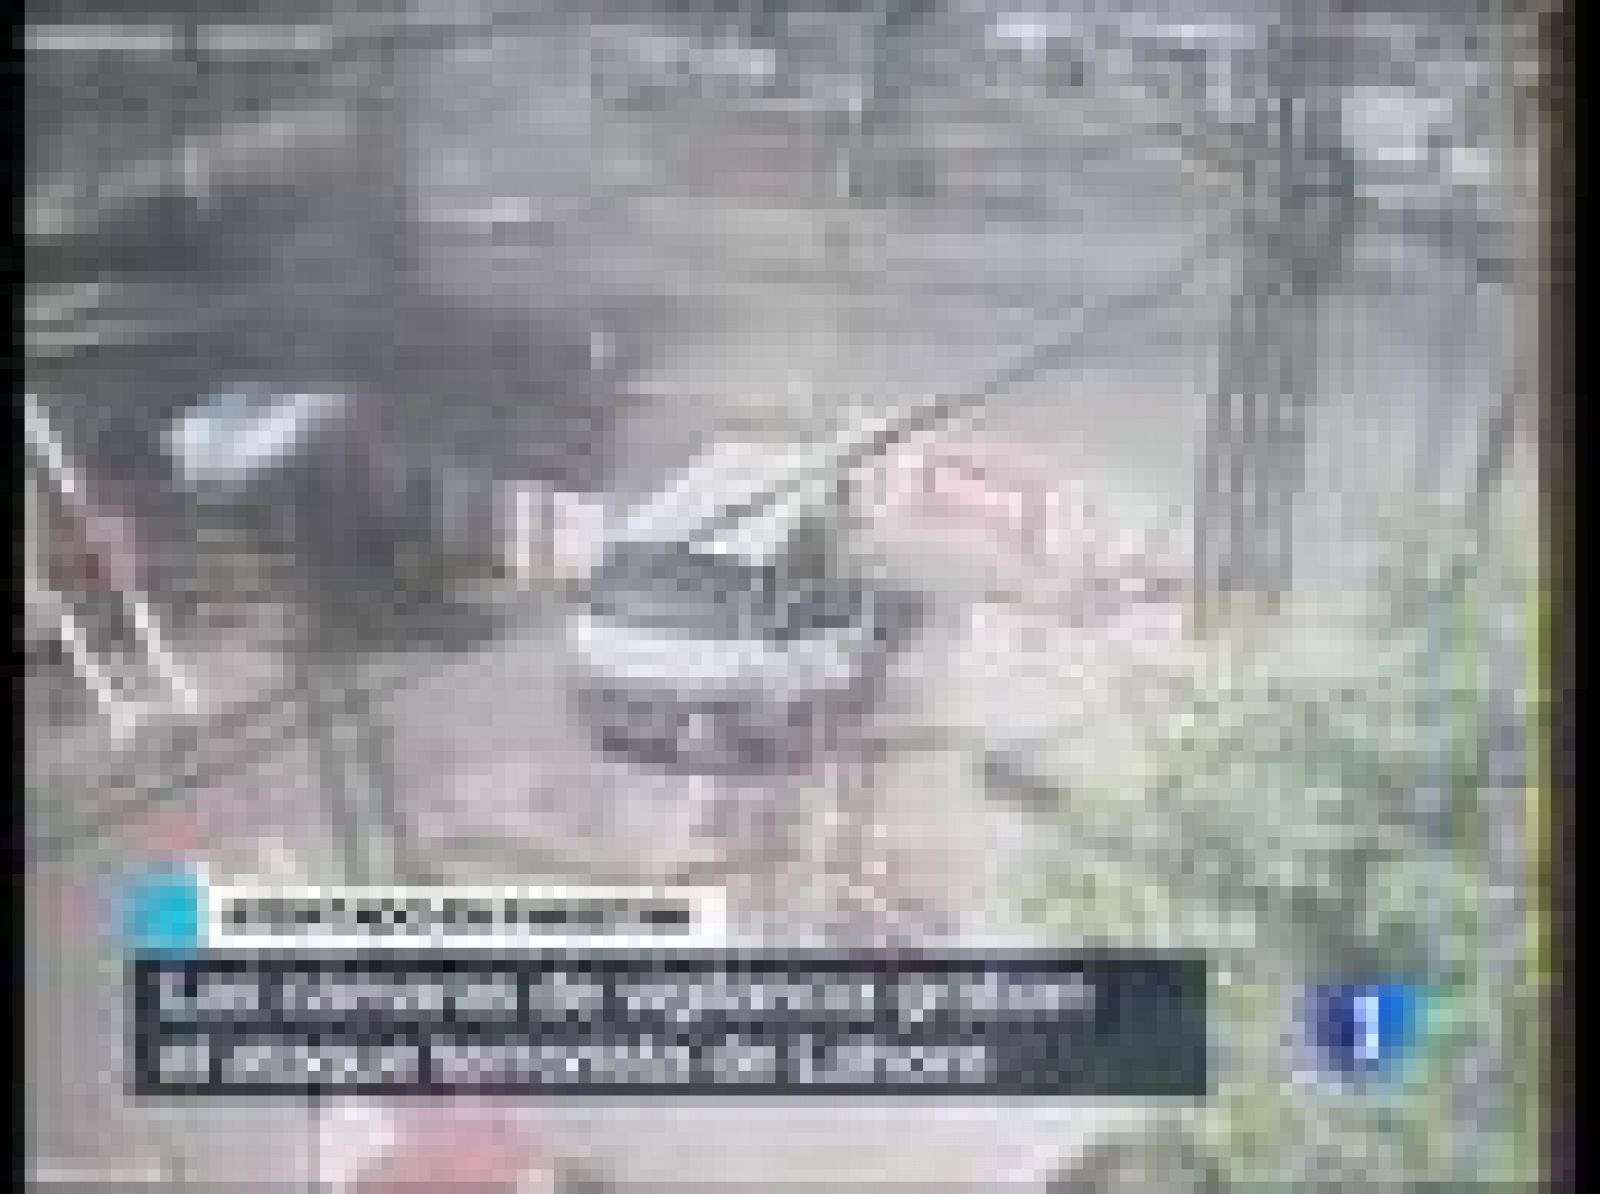 Se trata del momento de la explosión de la bomba que la semana pasada dejó 30 muertos en Lahore.